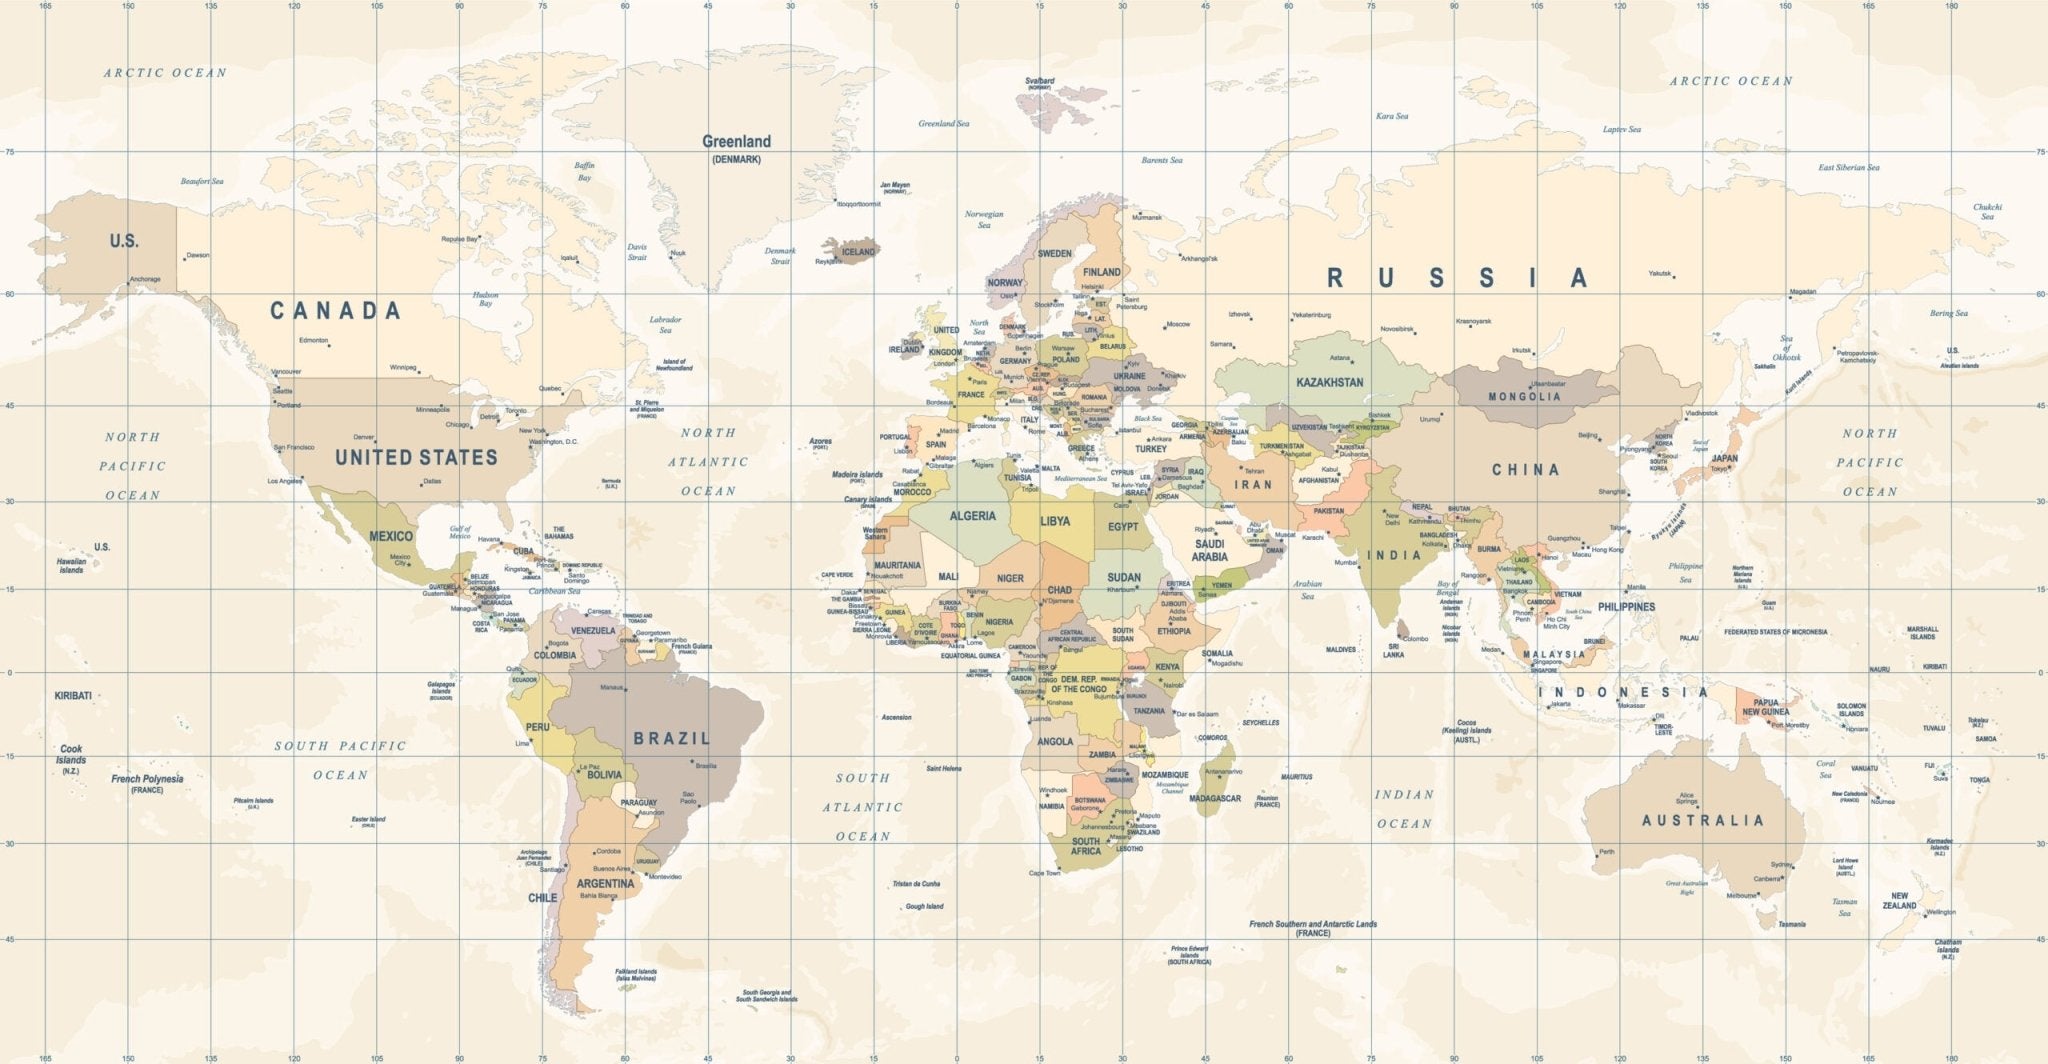 Papier peint carte du monde panoramique - Kam & Leon